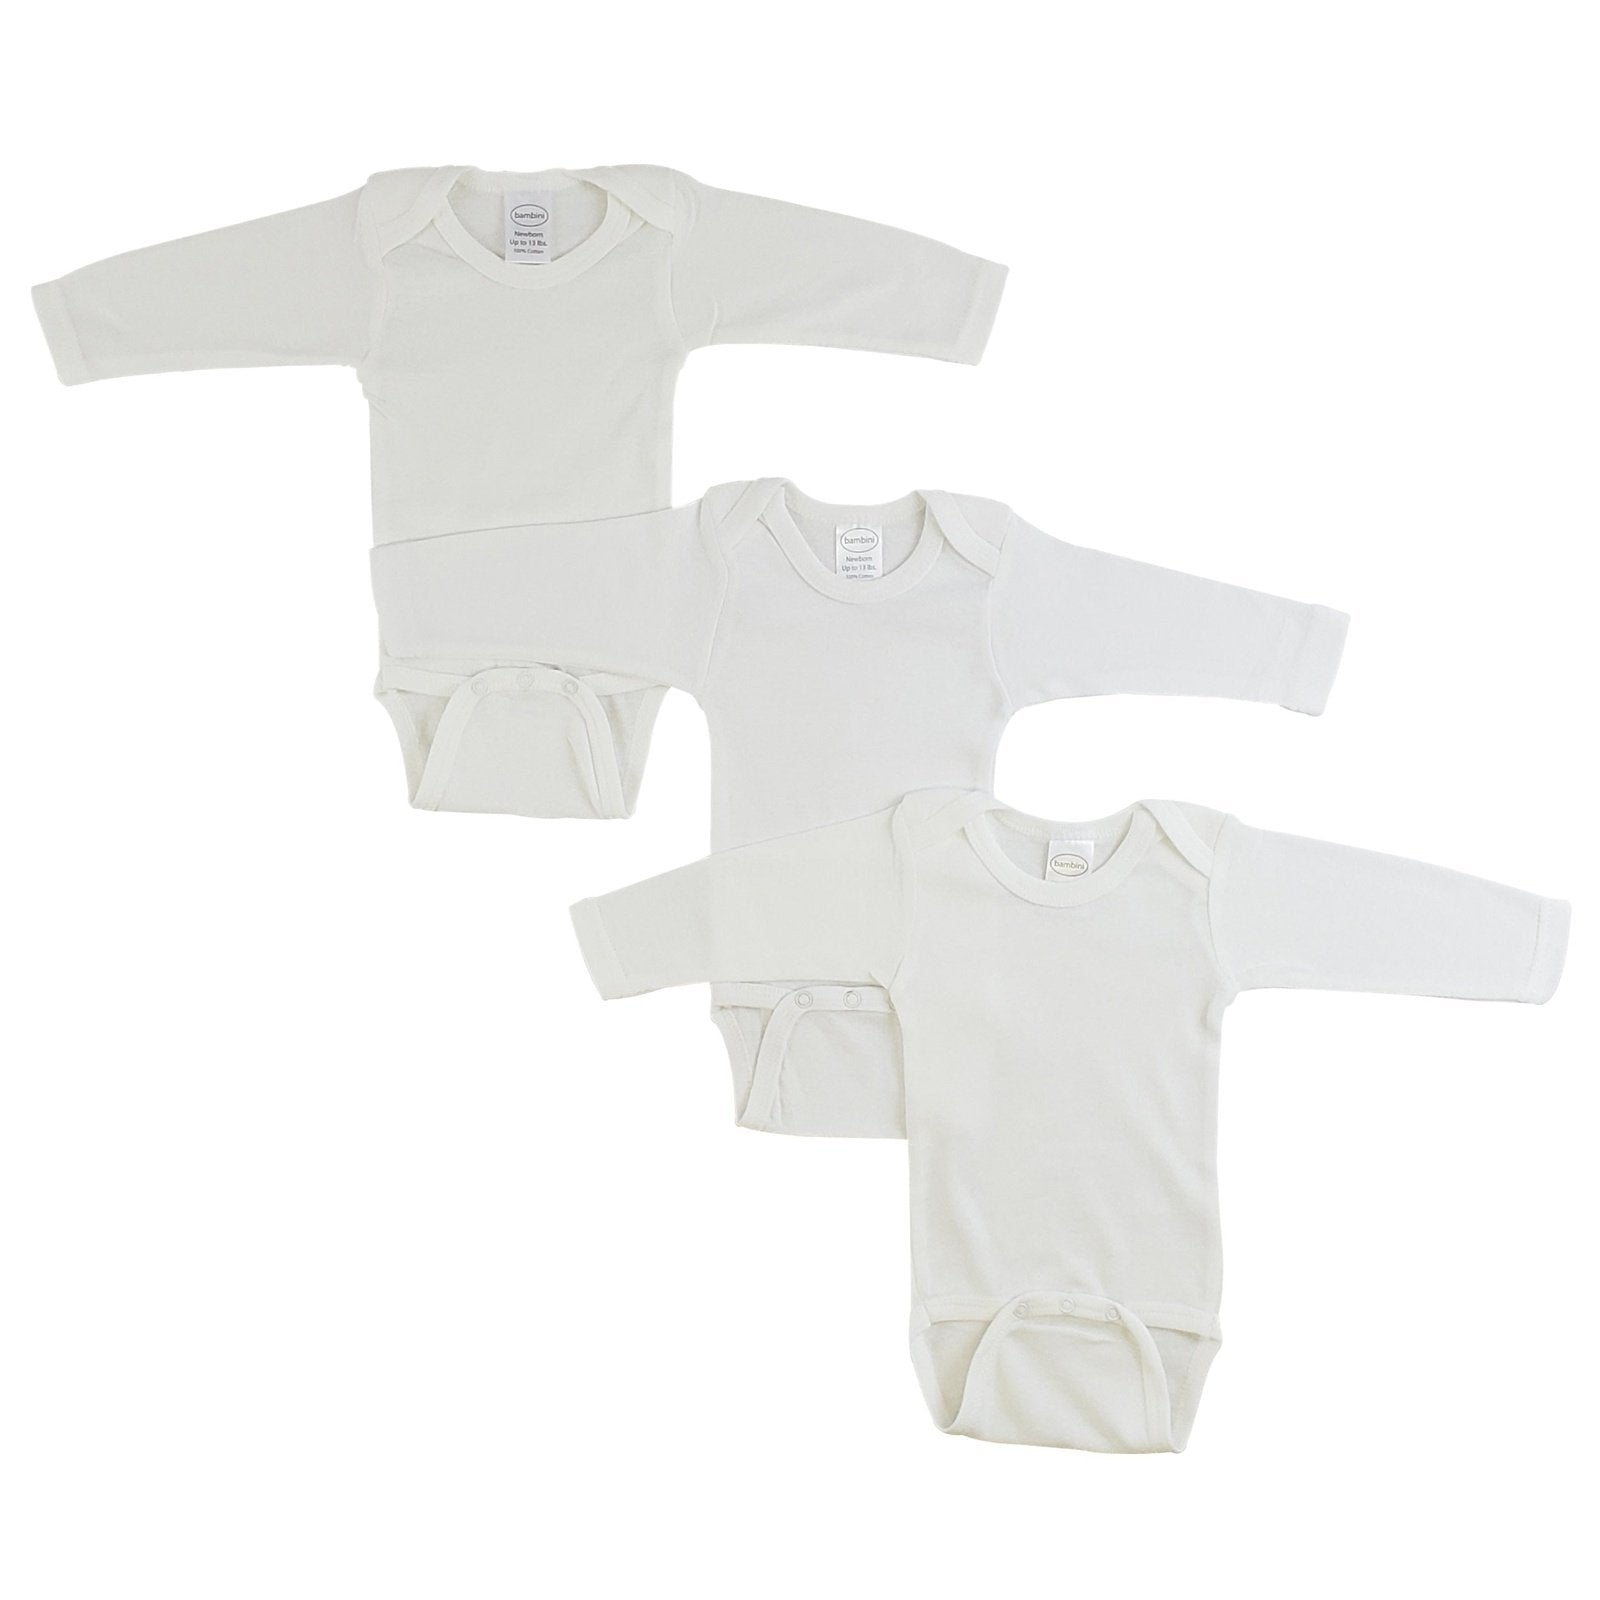 Bambini Long Sleeve White Onesie 3 Pack